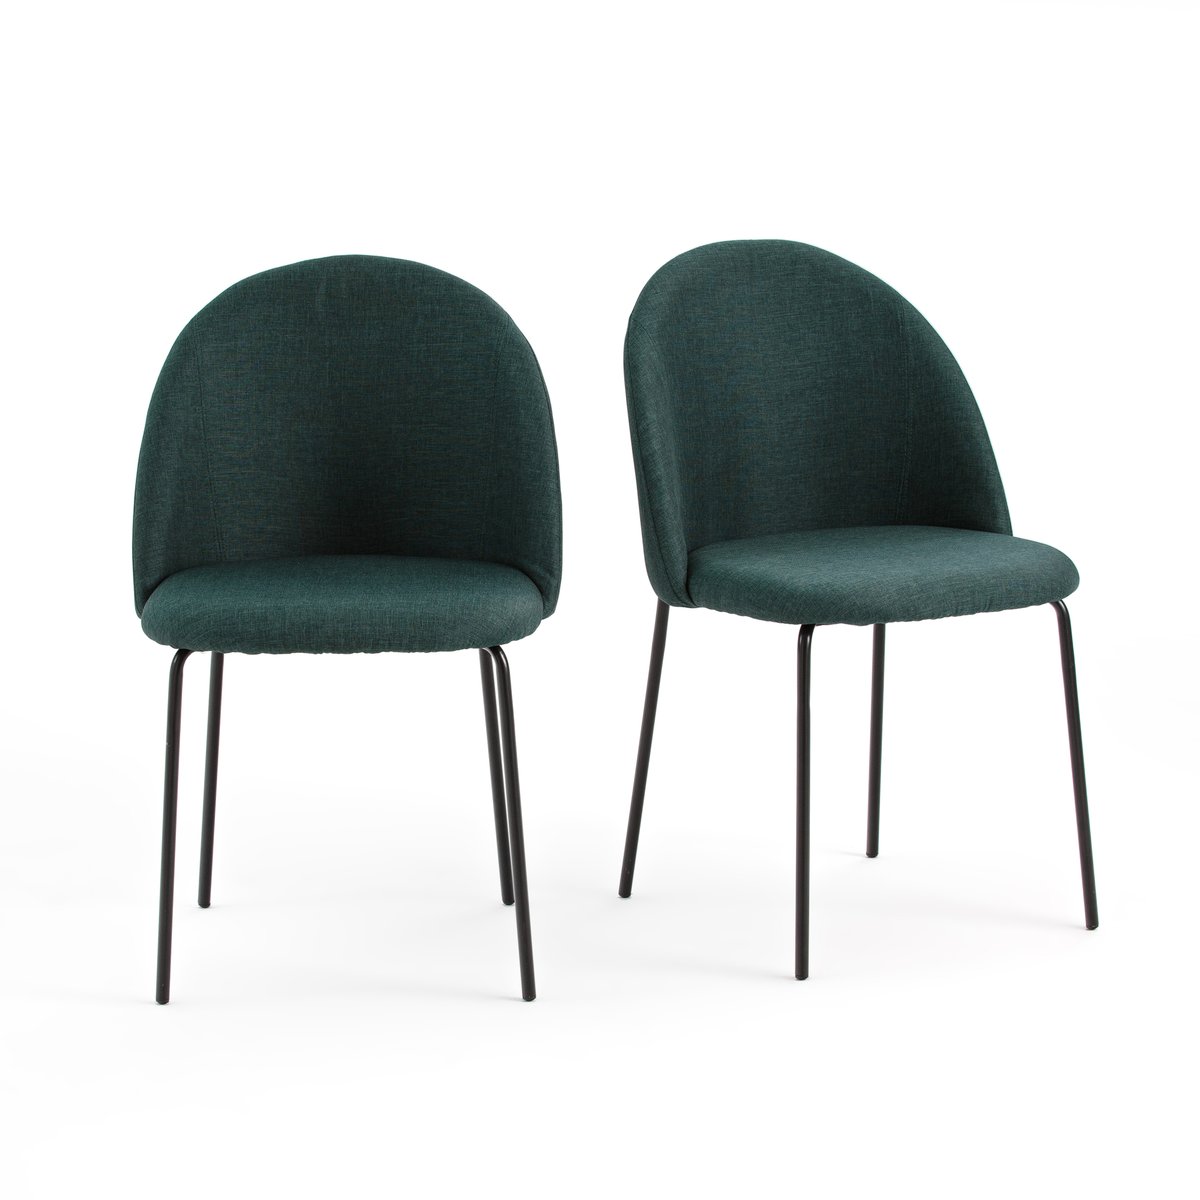 Комплект из 2 стульев NORDIE La Redoute единый размер зеленый